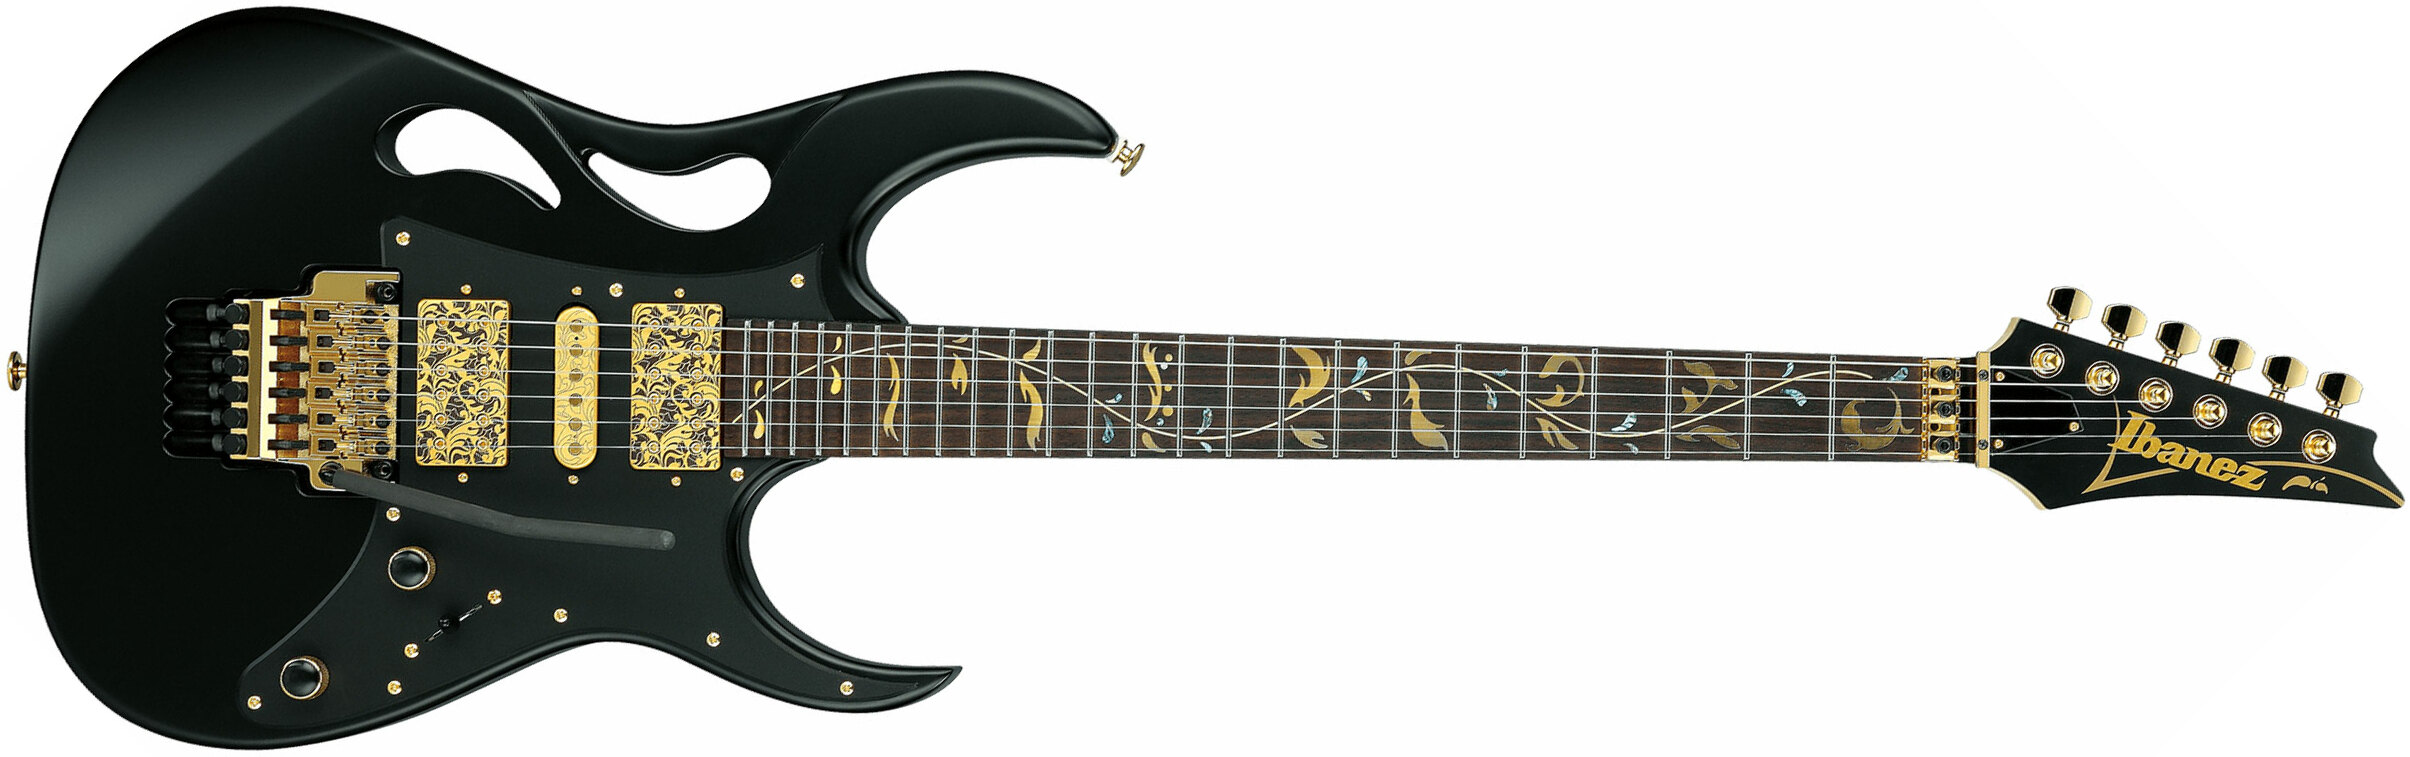 Ibanez Steve Vai Pia3761 Xb Signature Jap 2h Dimarzio Fr Rw - Onyx Black - E-Gitarre in Str-Form - Main picture